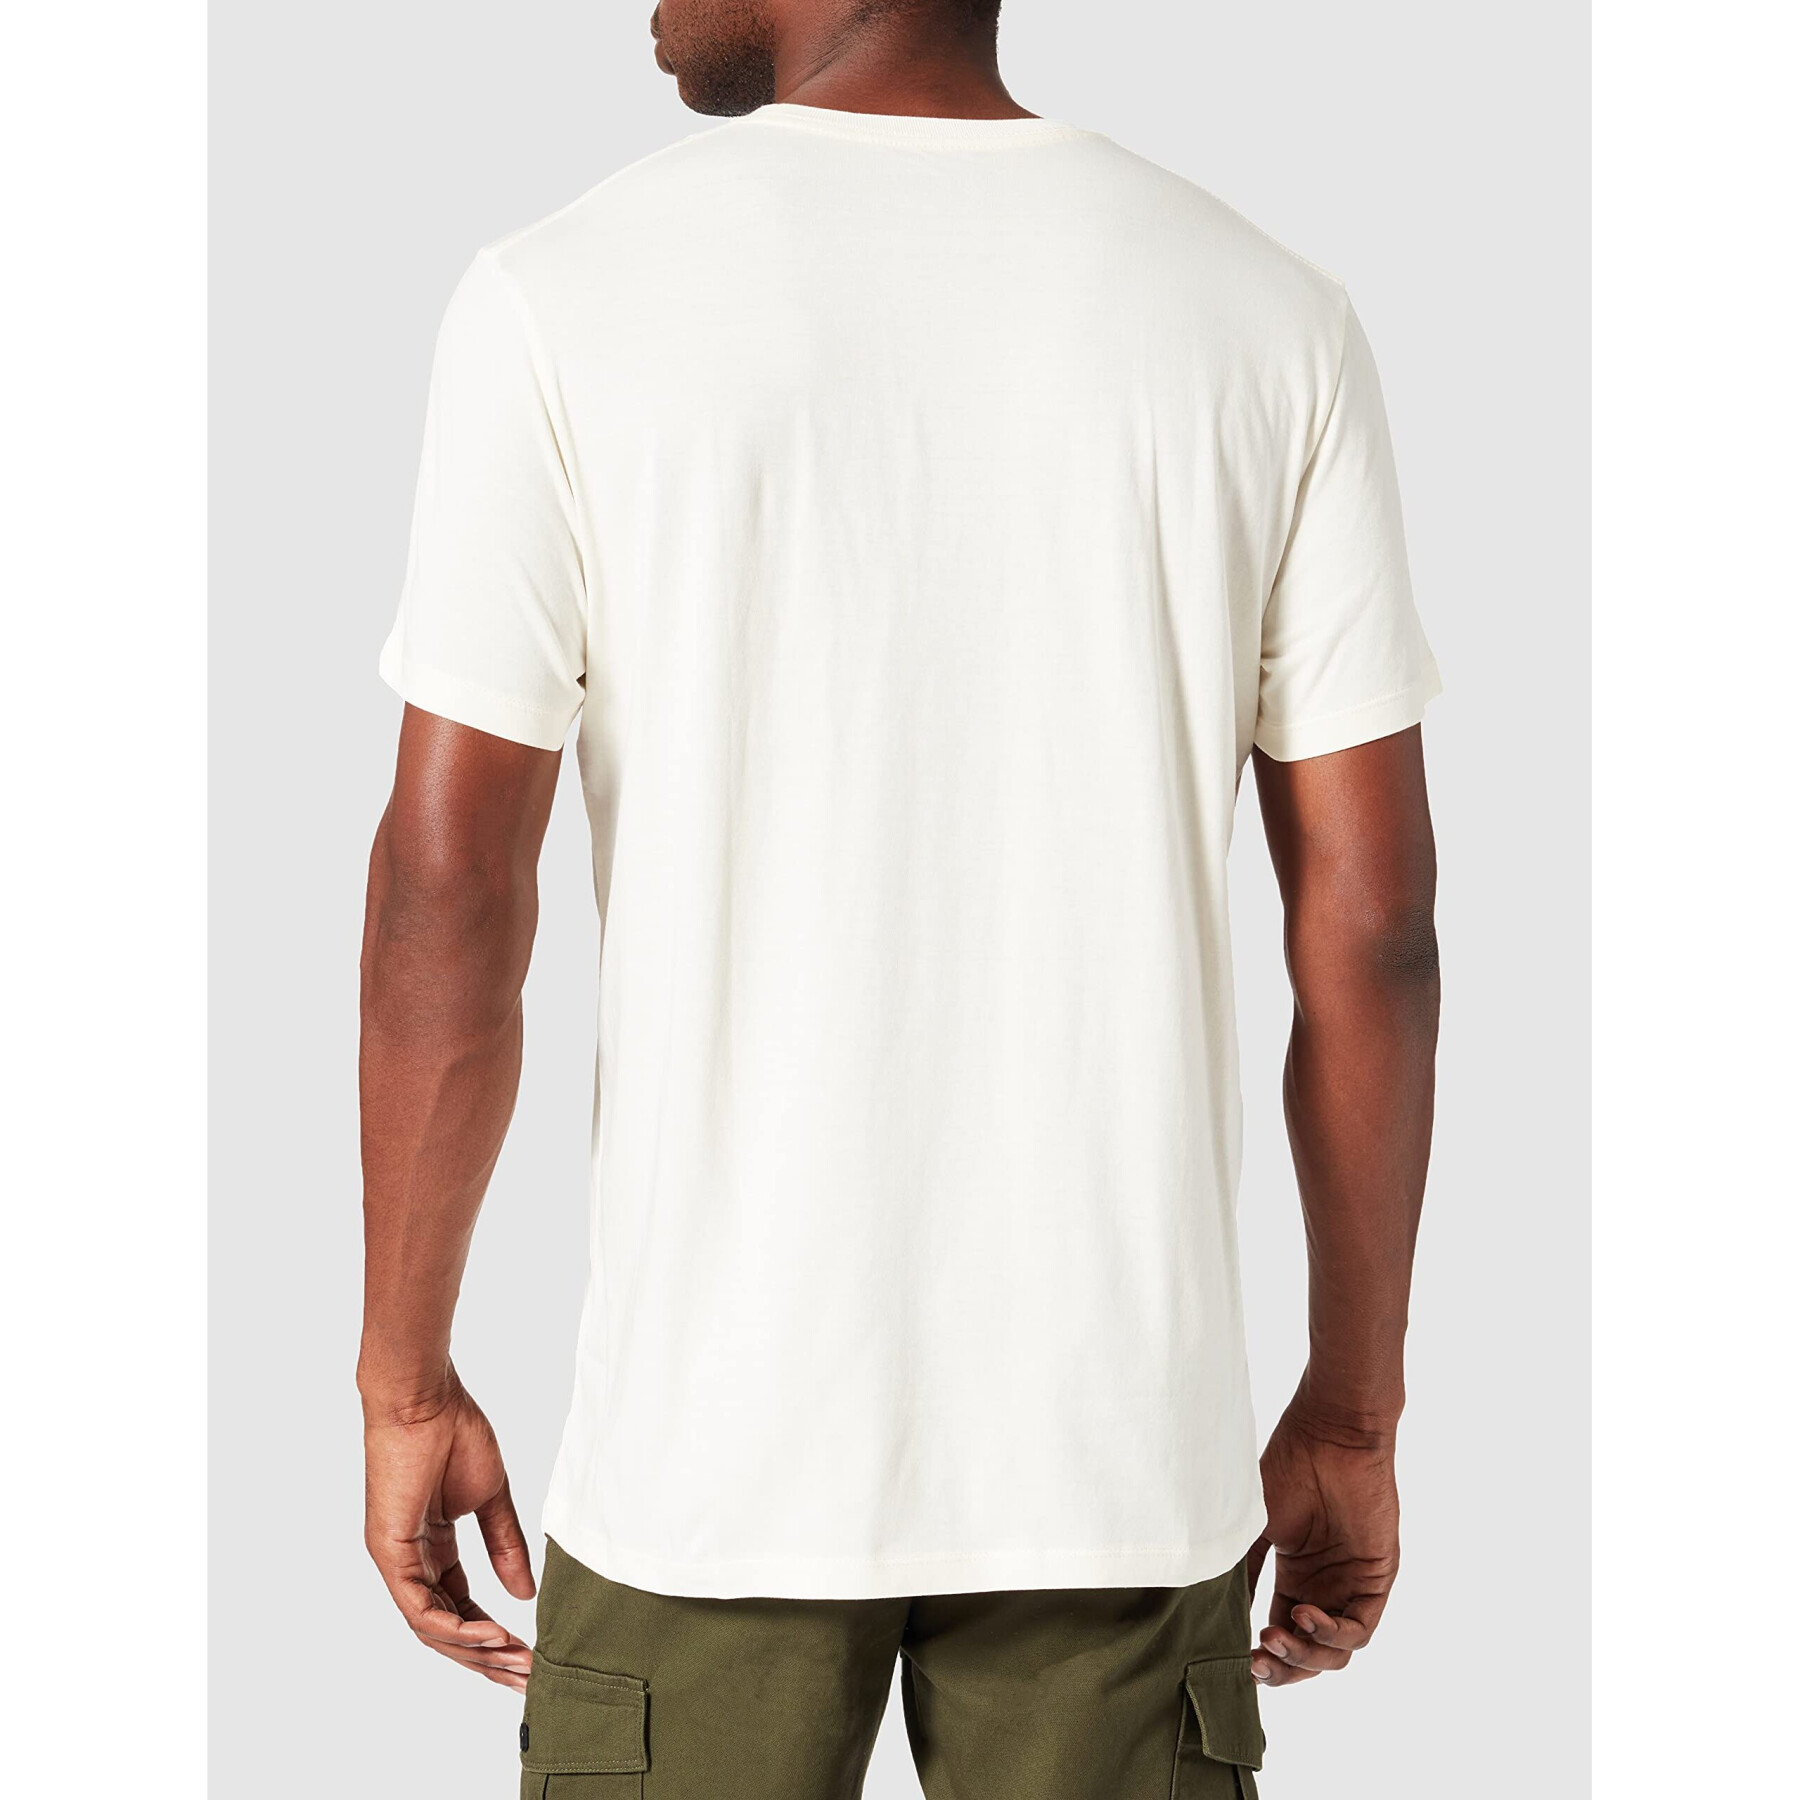 T-shirt Wrangler Off white